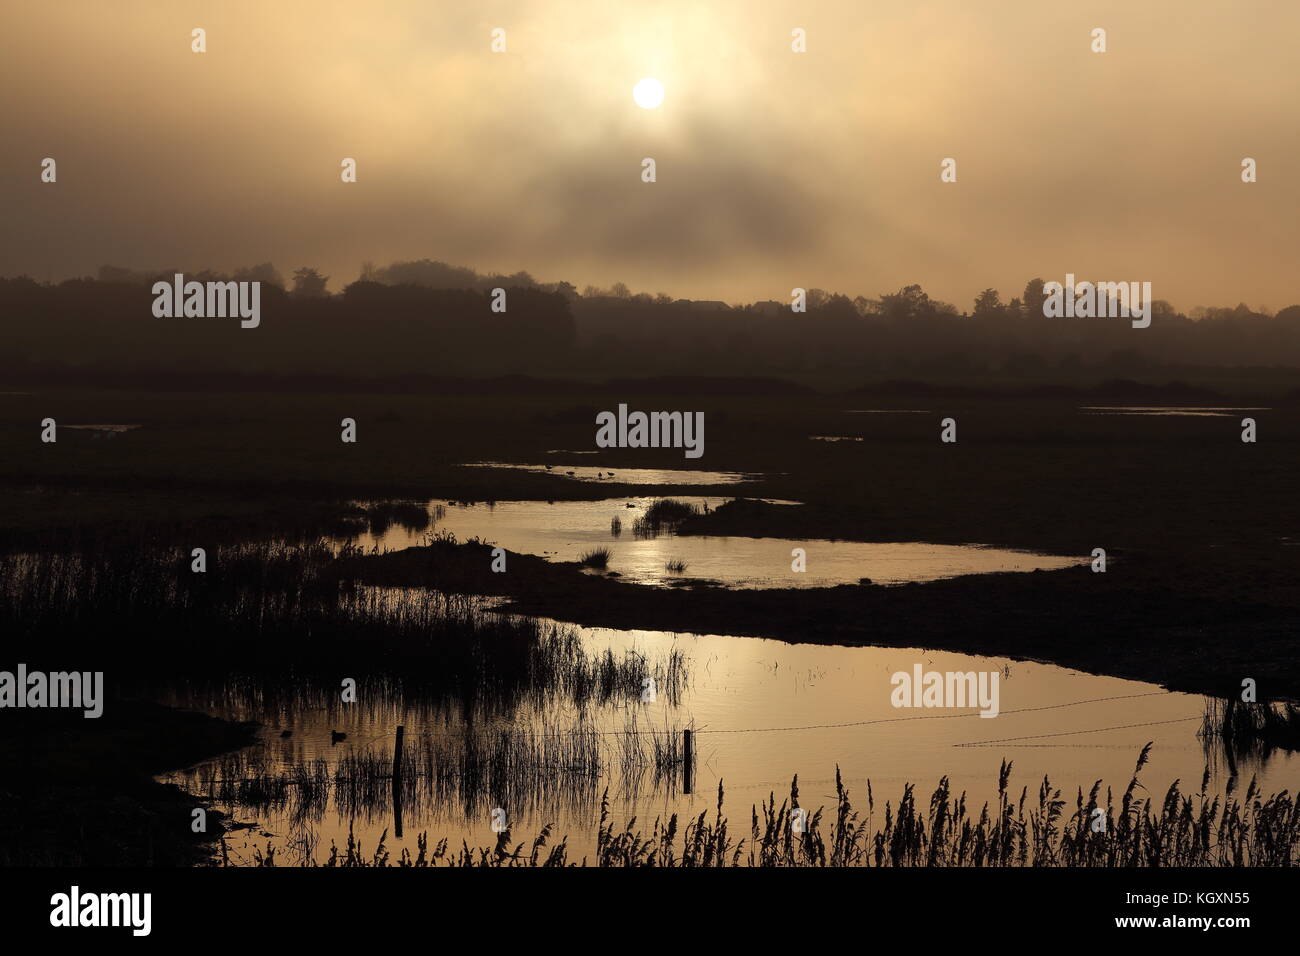 Sonnenuntergang über Feuchtgebiete in North Norfolk, Großbritannien. Sonnenlicht im Sumpfgebiet Wasser wider. wildvogel Rastplätze und Fütterung. dunstiges Sonnenlicht durch den Nebel. Stockfoto